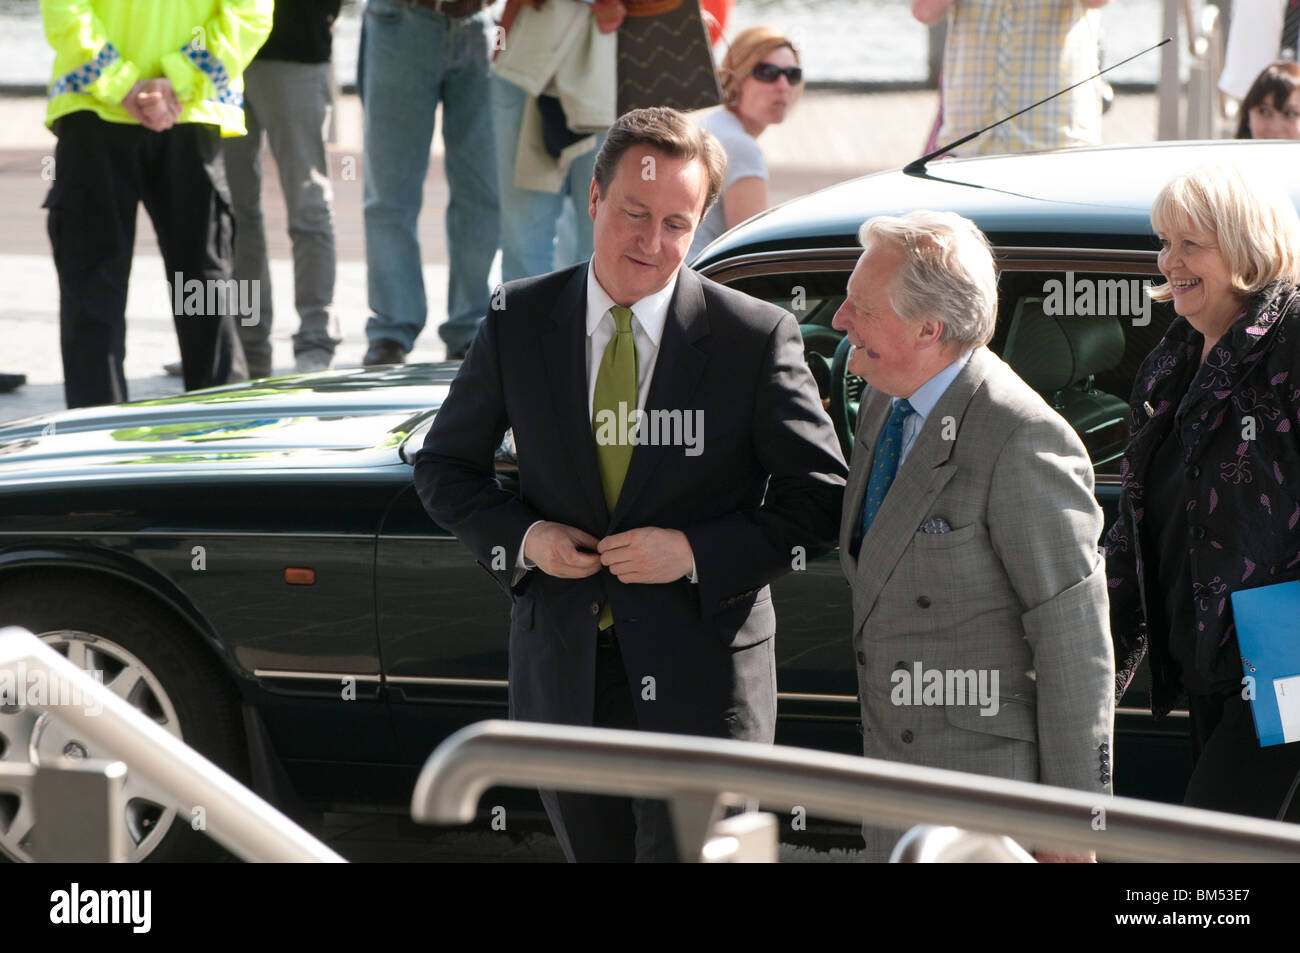 El Primer Ministro David Cameron visitando la Asamblea galesa, Cardiff, el 17 de mayo de 2010 Foto de stock